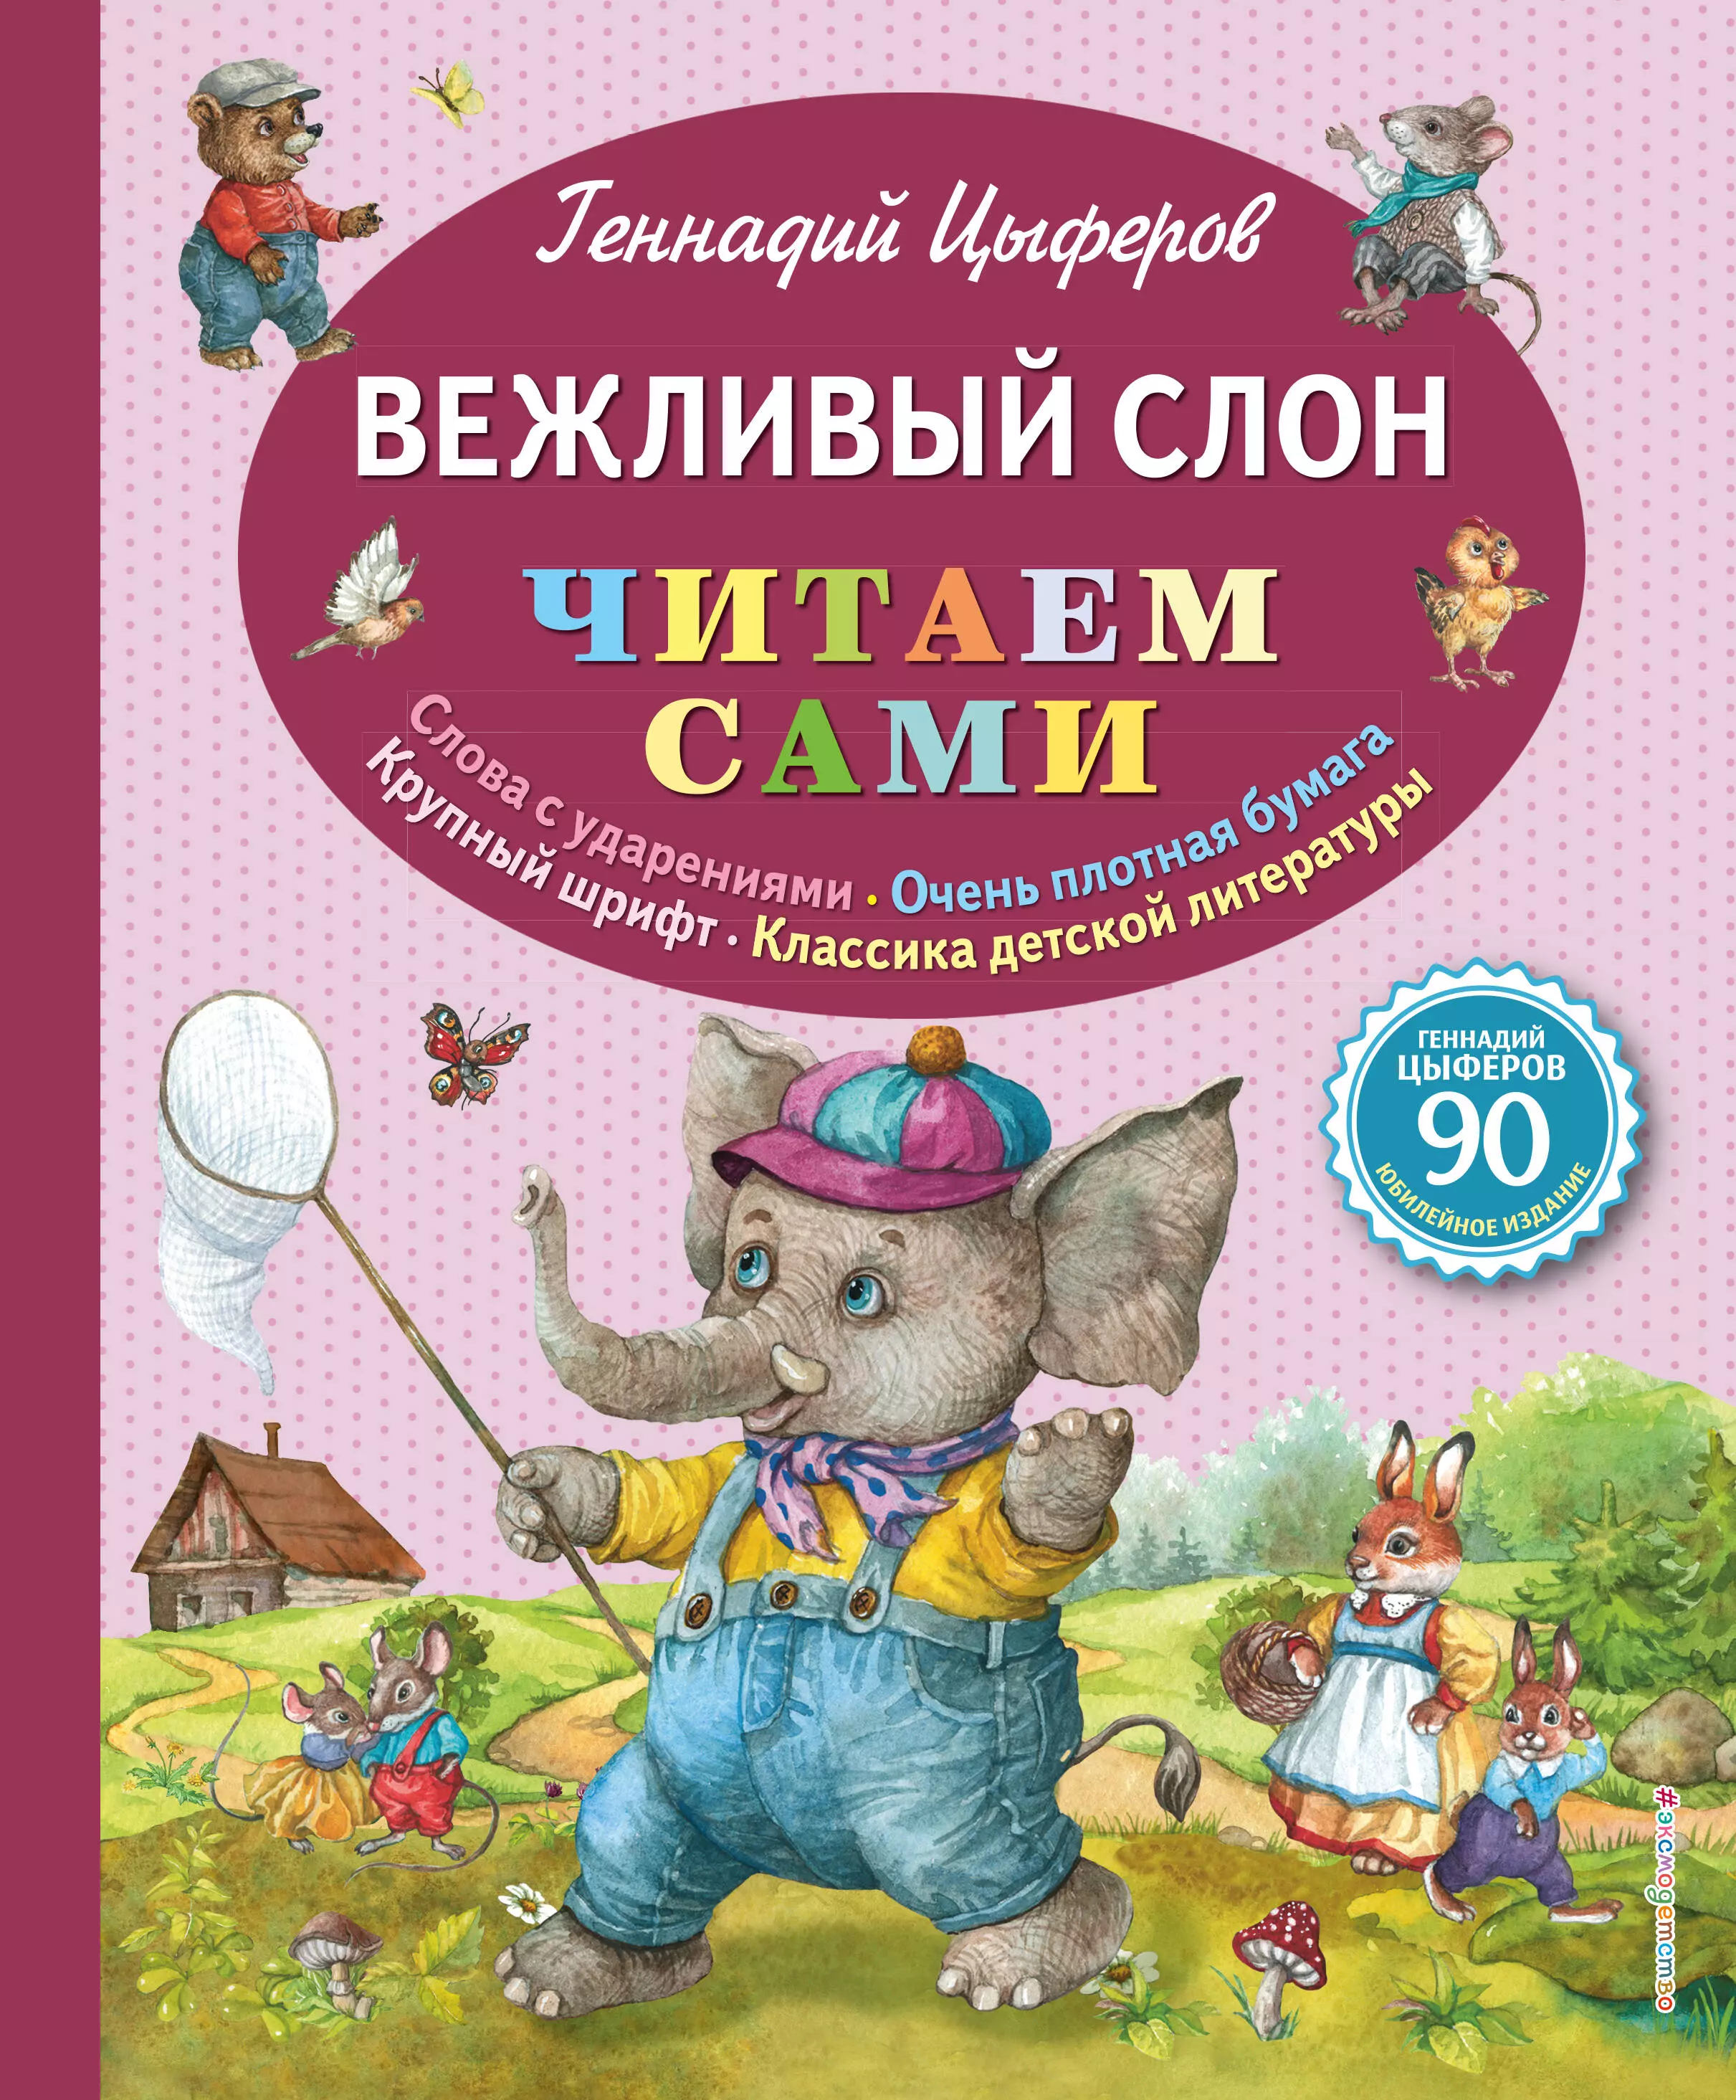 Цыферов Геннадий Михайлович - Вежливый слон